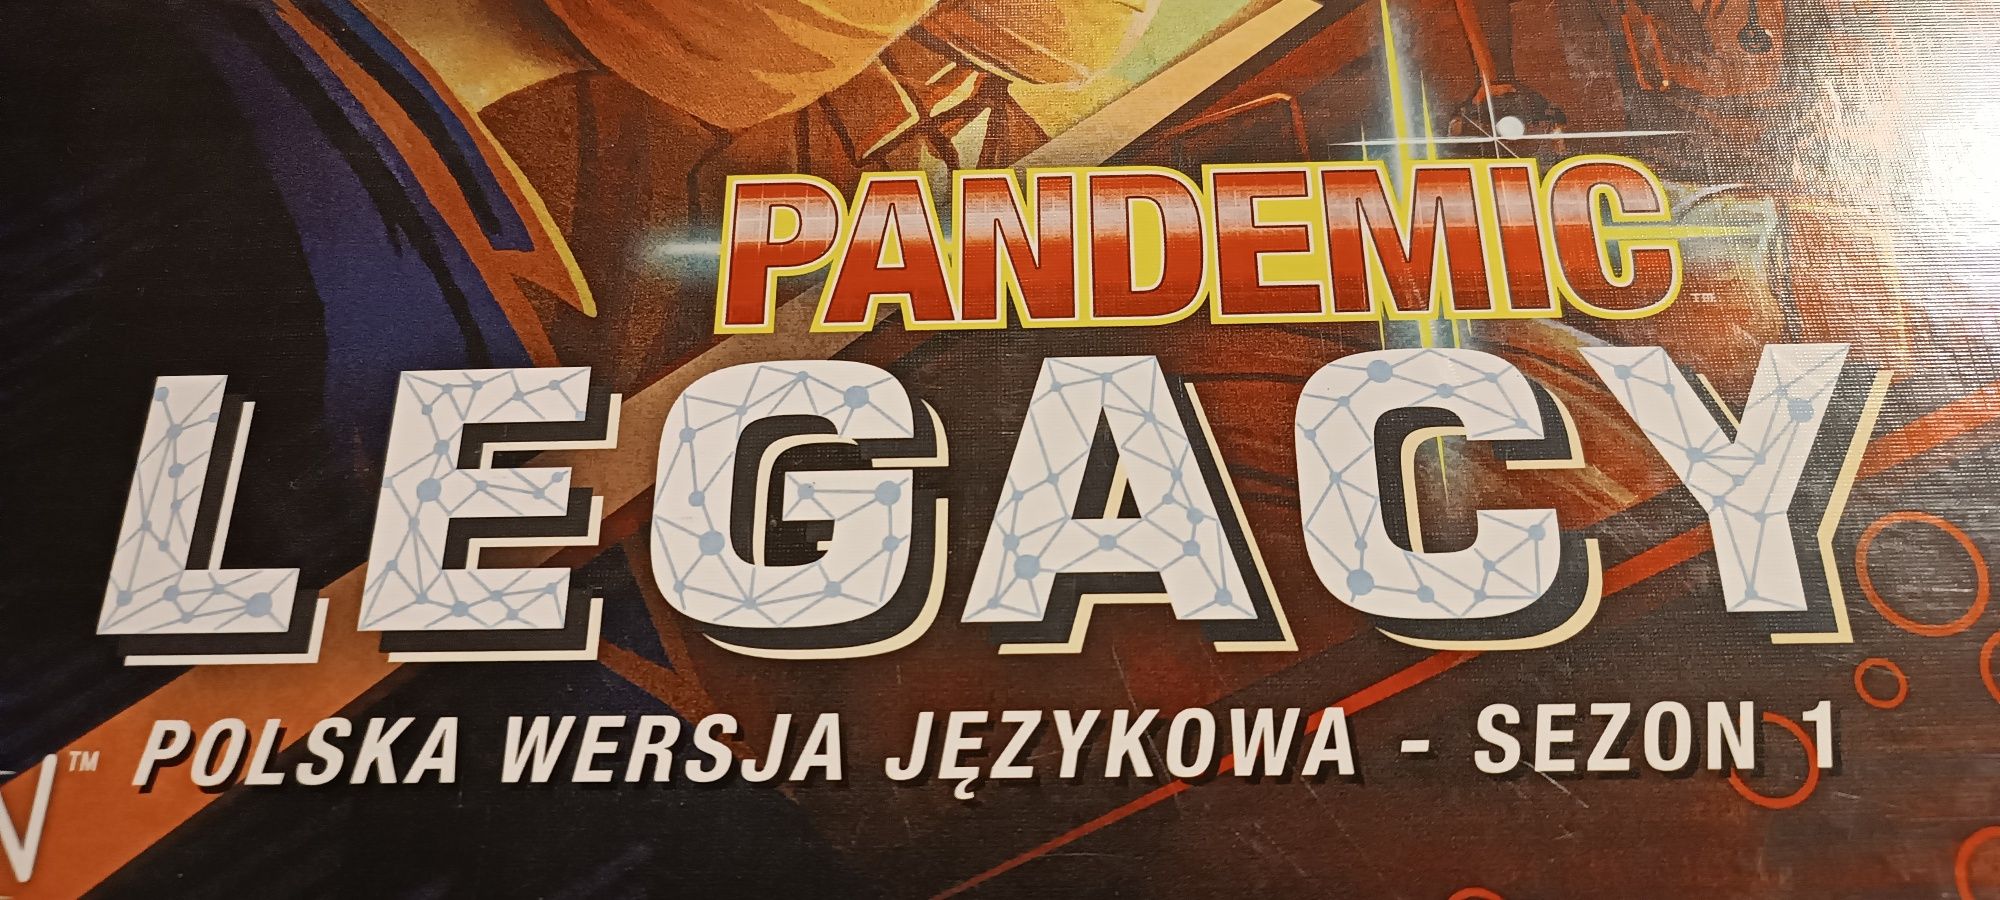 Pandemic Legacy sezon 0 nowa w folii